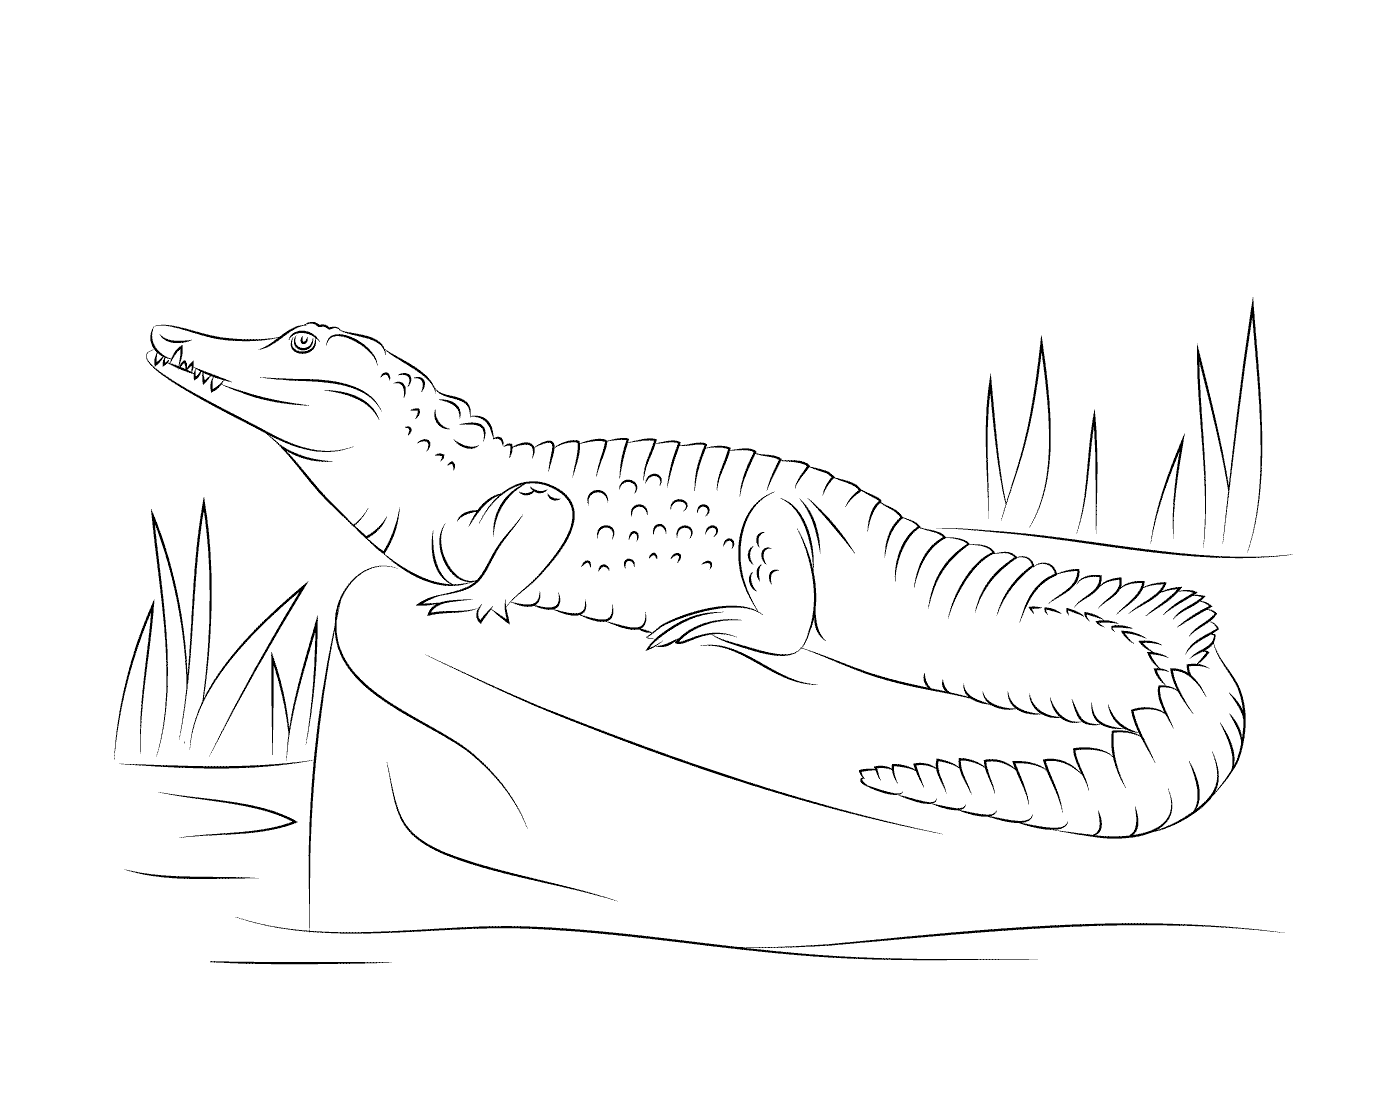  Нильский крокодил, виденный из профиля, сидит на скале 